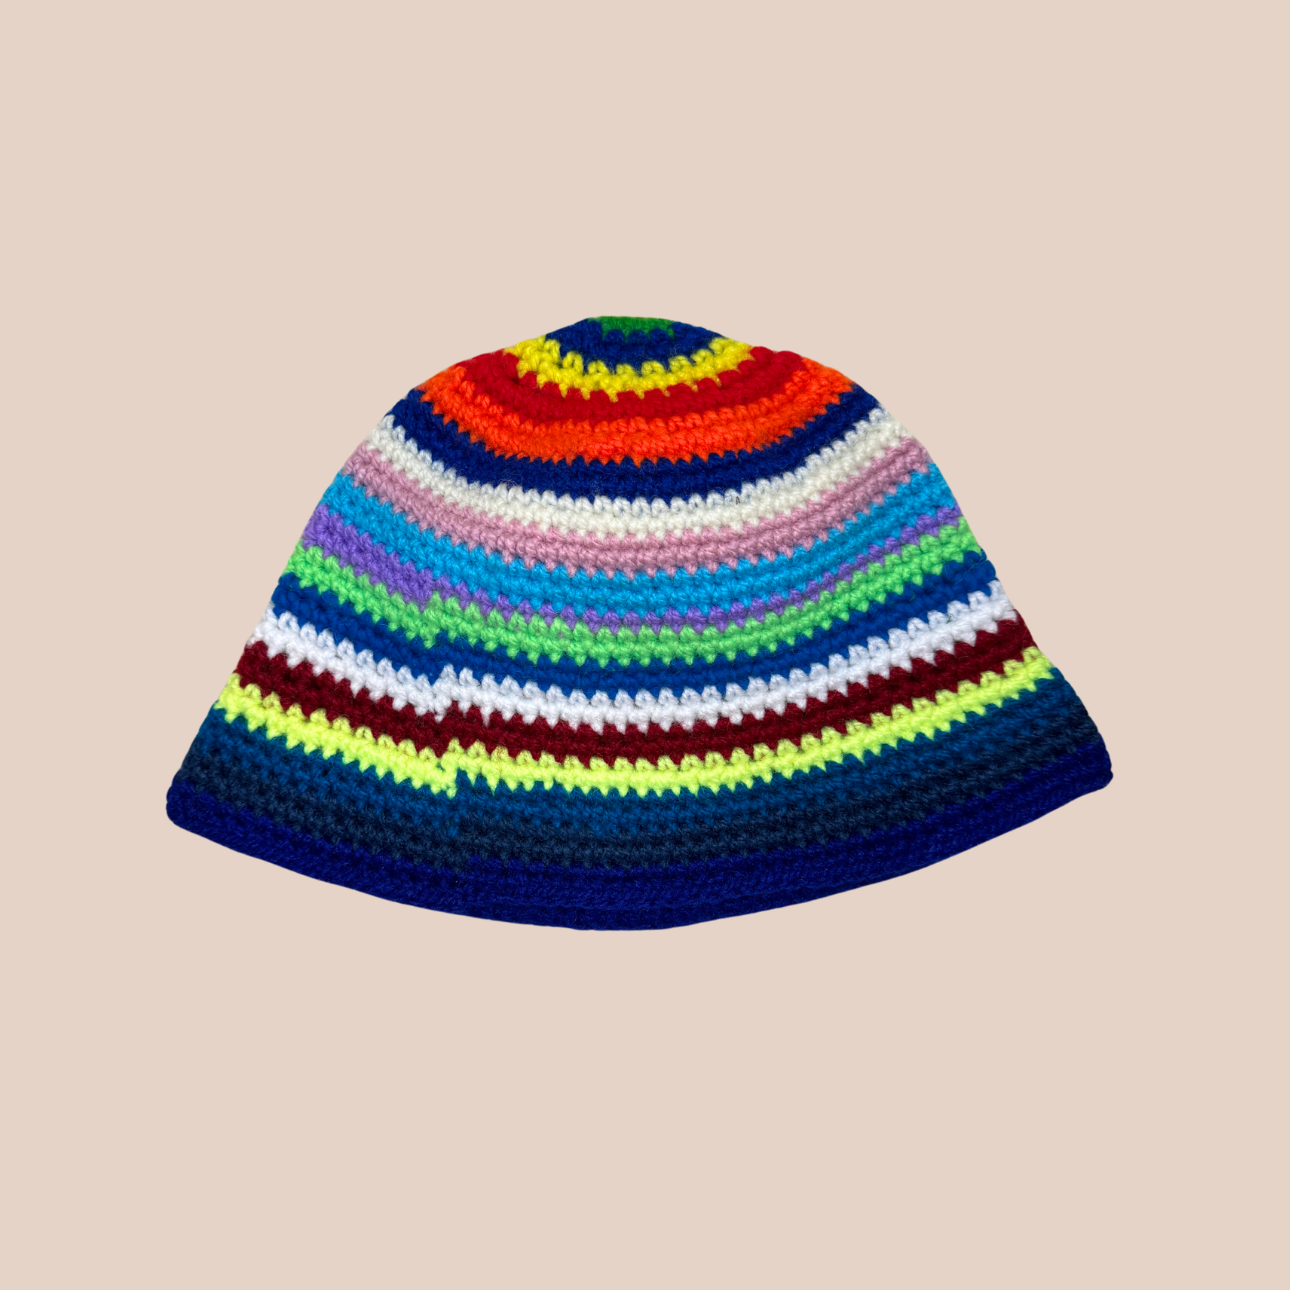 Un bucket hat rayé crocheté en laine et acrylique, arborant des couleurs vives et audacieuses